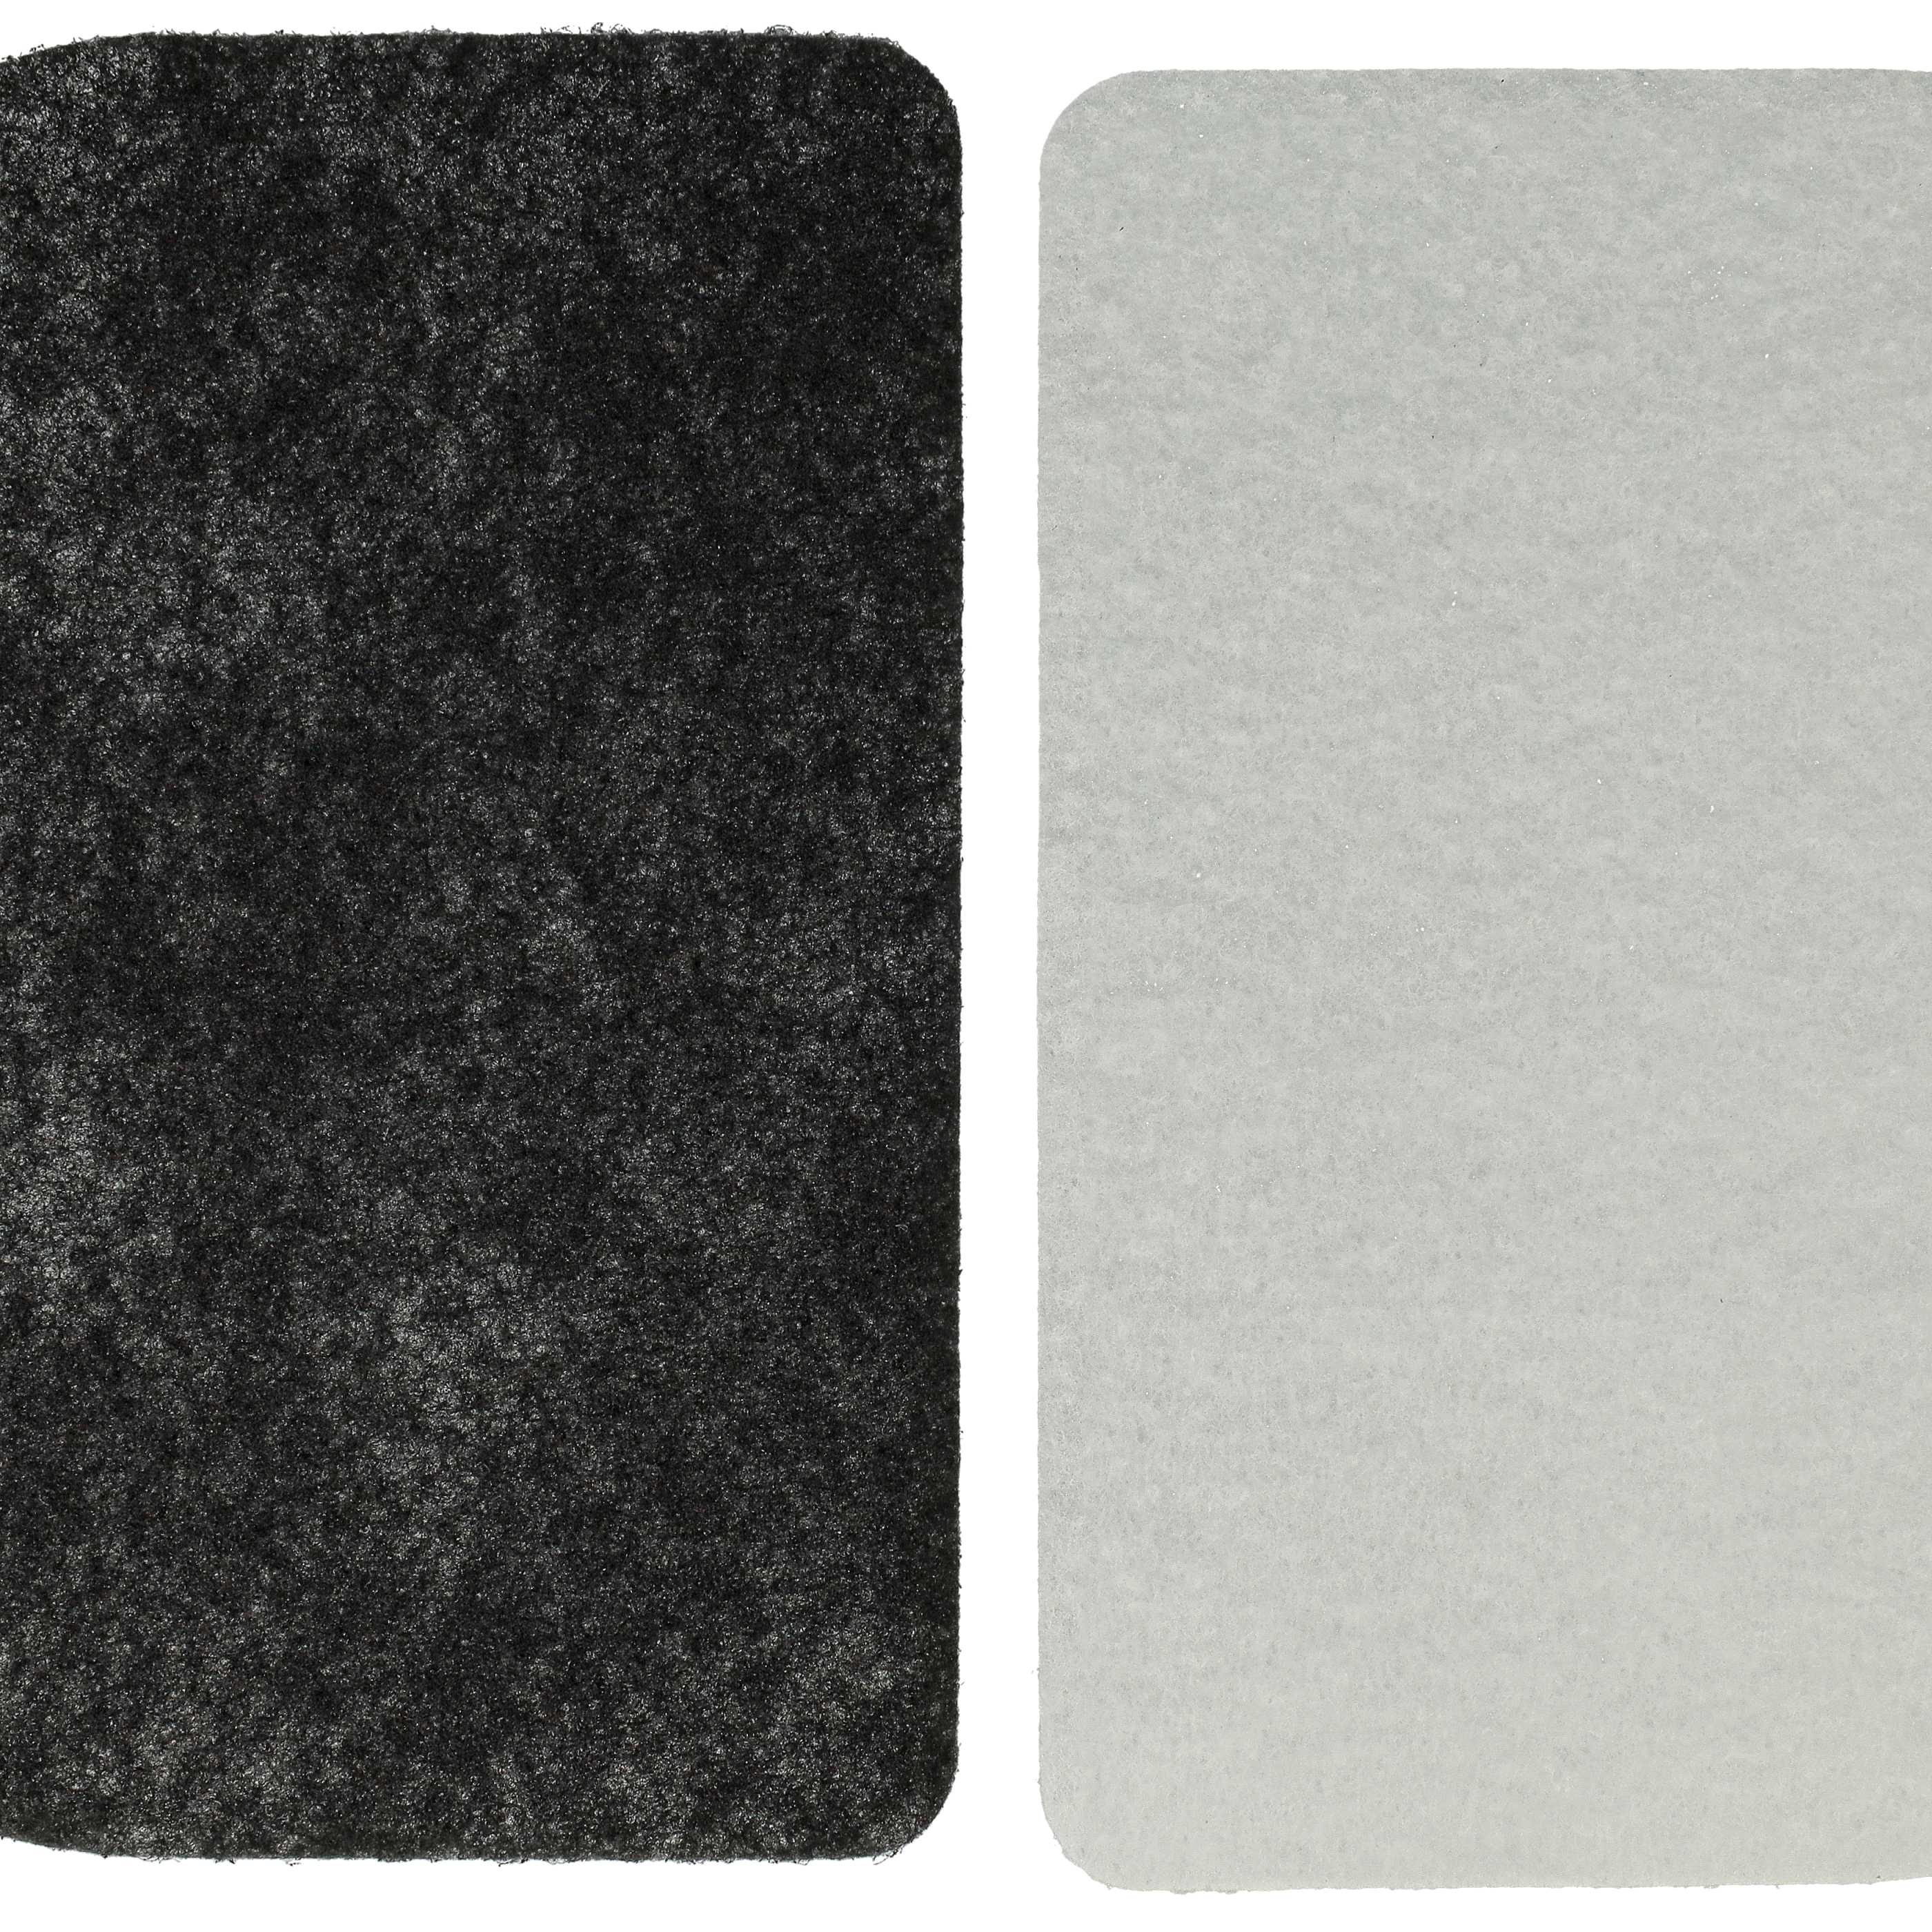 3x filtro ai carboni attivi, 6x filtro di carta, 3x filtro antigrasso sostituisce De Longhi 5525101500 